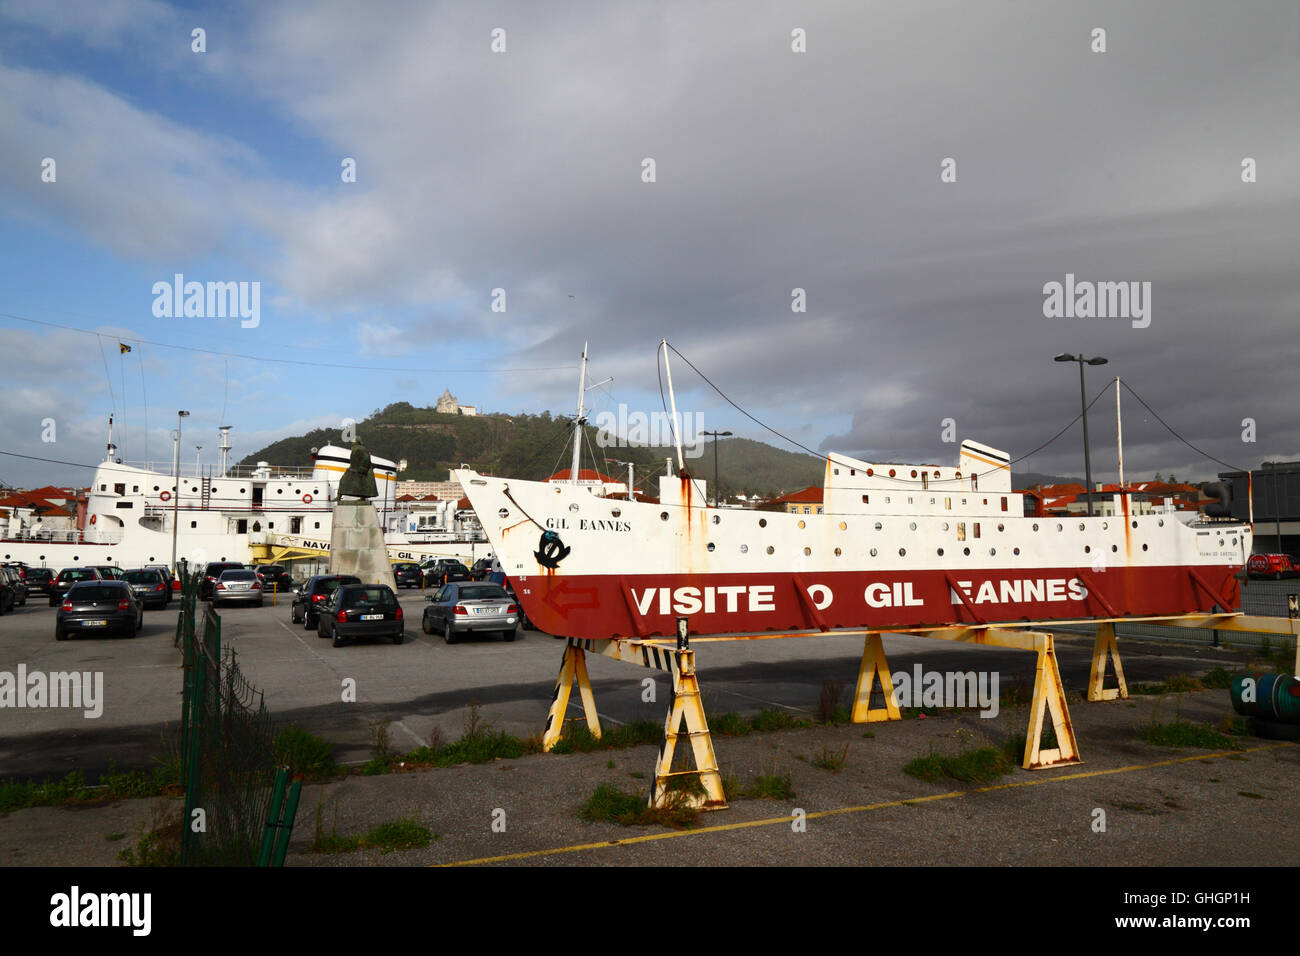 Segno nel parco auto incoraggiando le visite al Gil Eannes, un ex nave ospedale, ora un museo di Viana do Castelo, Portogallo settentrionale Foto Stock